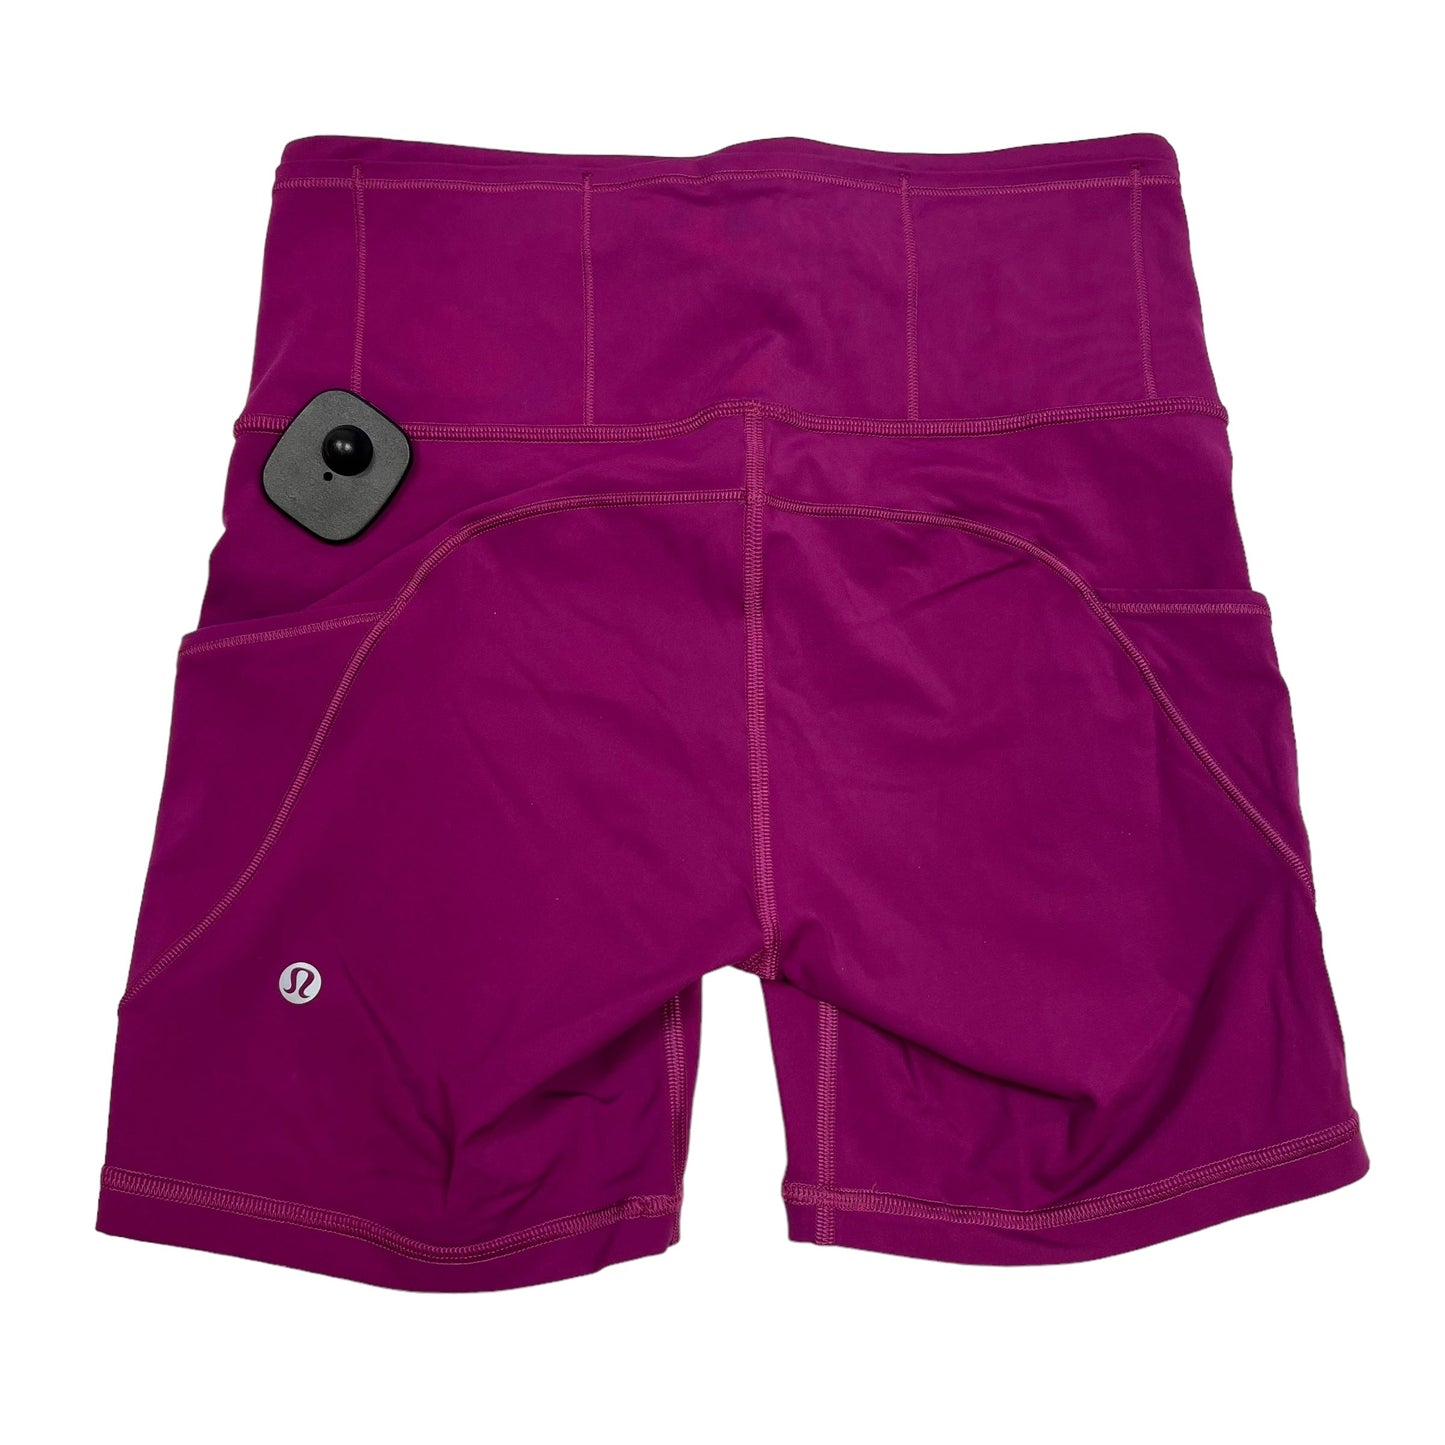 Purple Athletic Shorts Lululemon, Size S